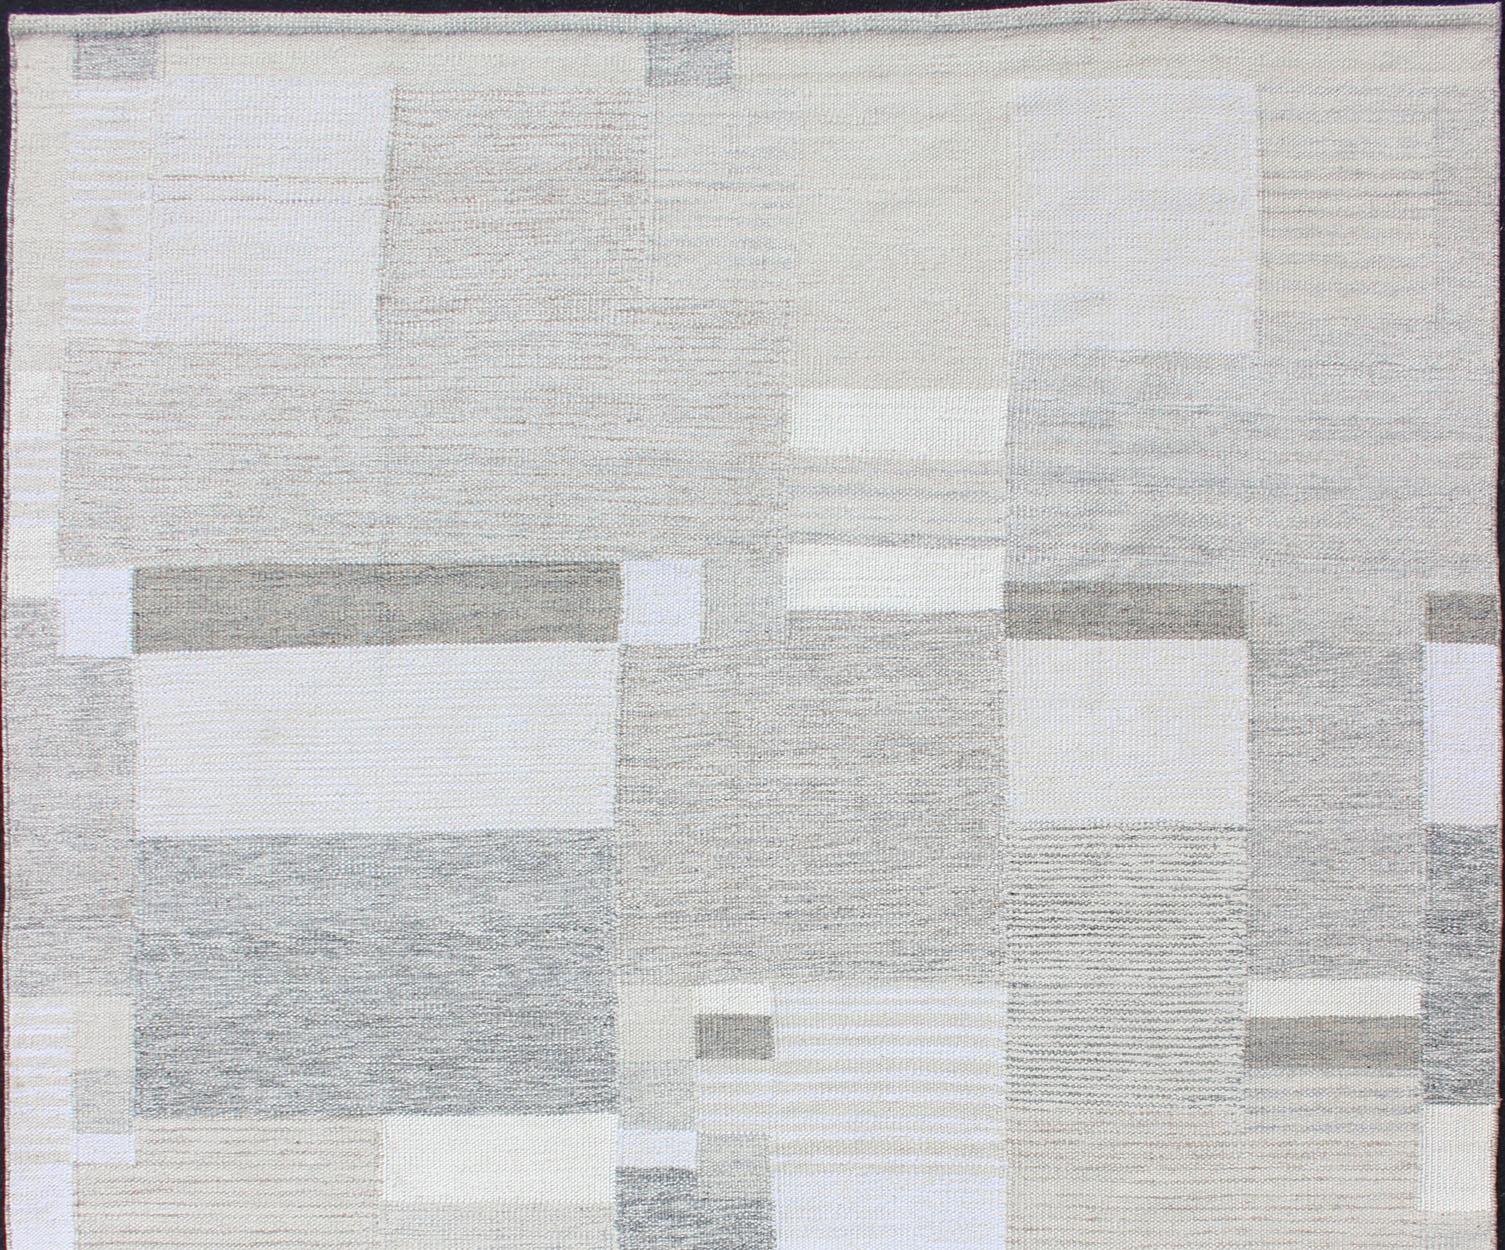 Grau, beige, hellbraun, weiß und Creme modernes Design skandinavischen Stil Flachgewebe Teppich, Teppich rjk-20011-shb-004-02, Herkunftsland / Typ: Indien / Skandinavisches Flachgewebe.

Dieser skandinavische Flachgewebe-Stil ist von den Arbeiten